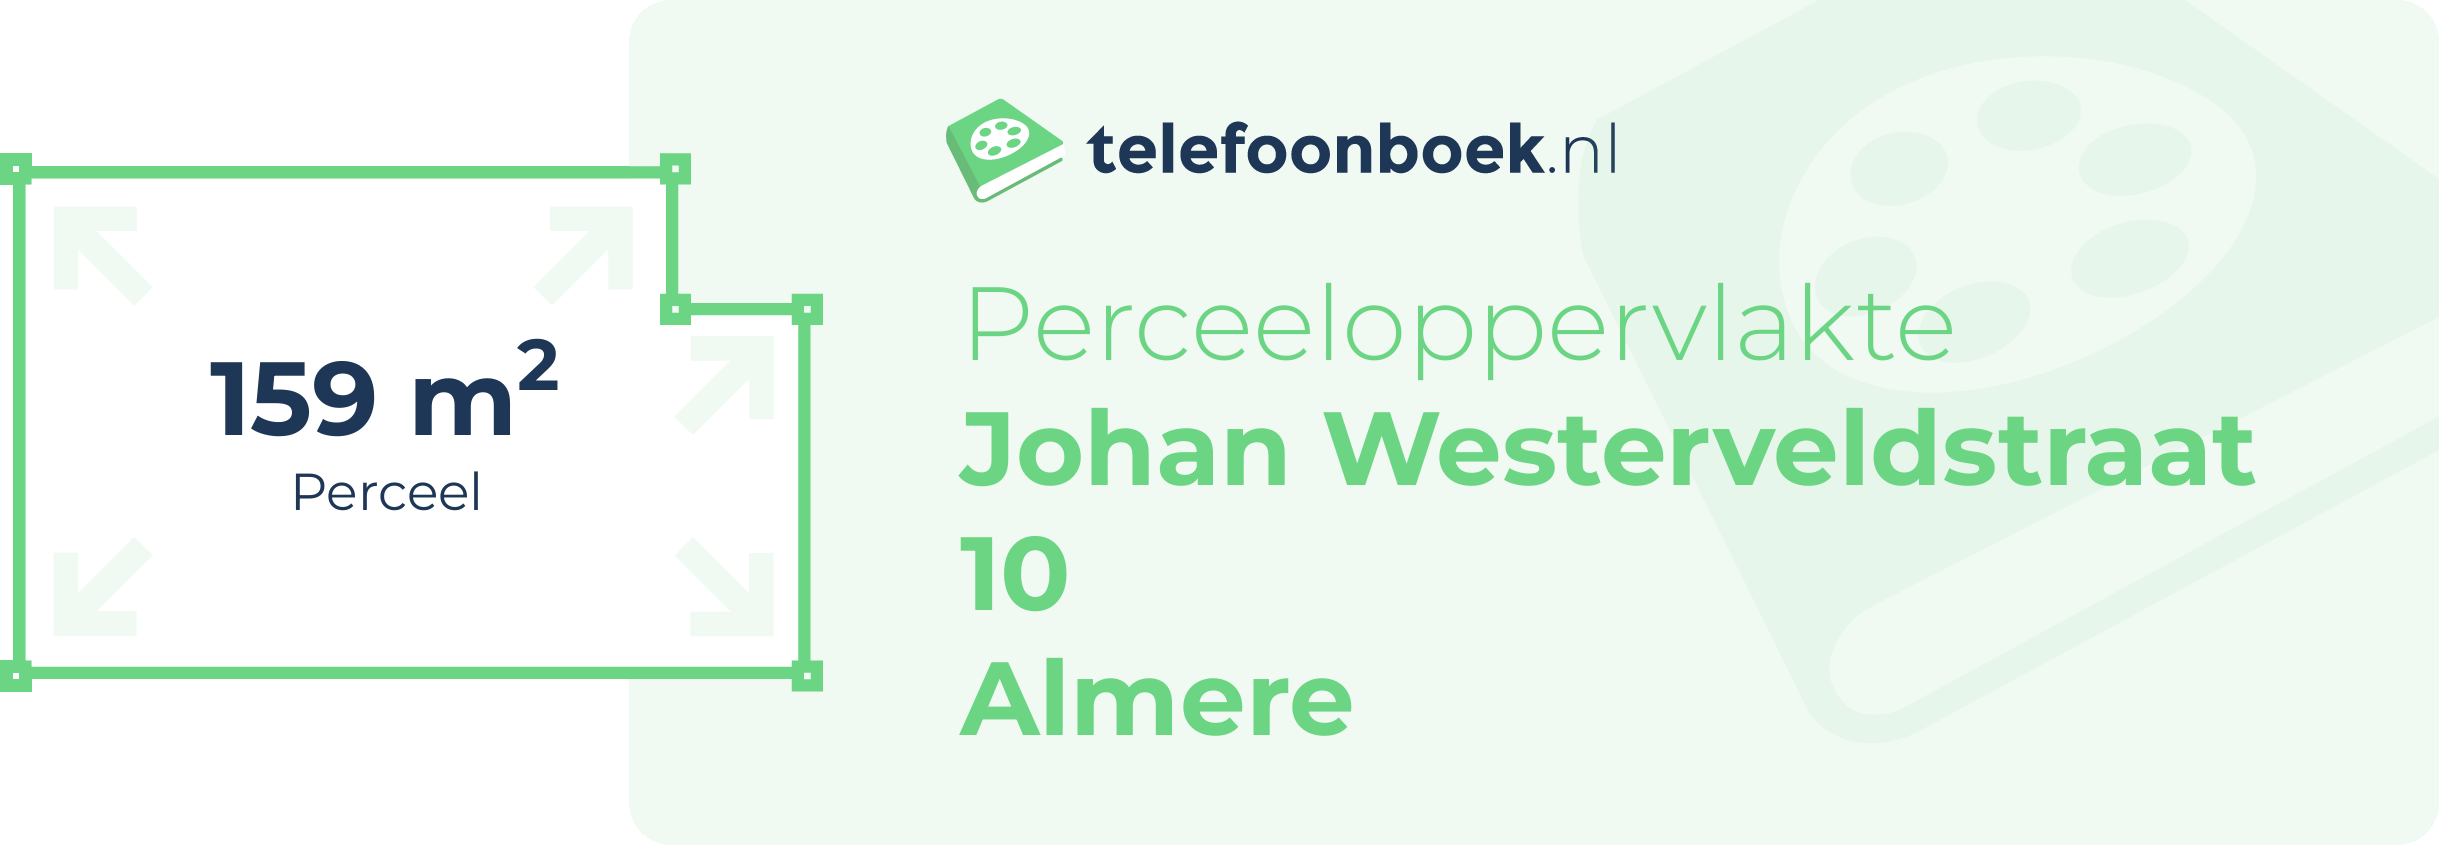 Perceeloppervlakte Johan Westerveldstraat 10 Almere